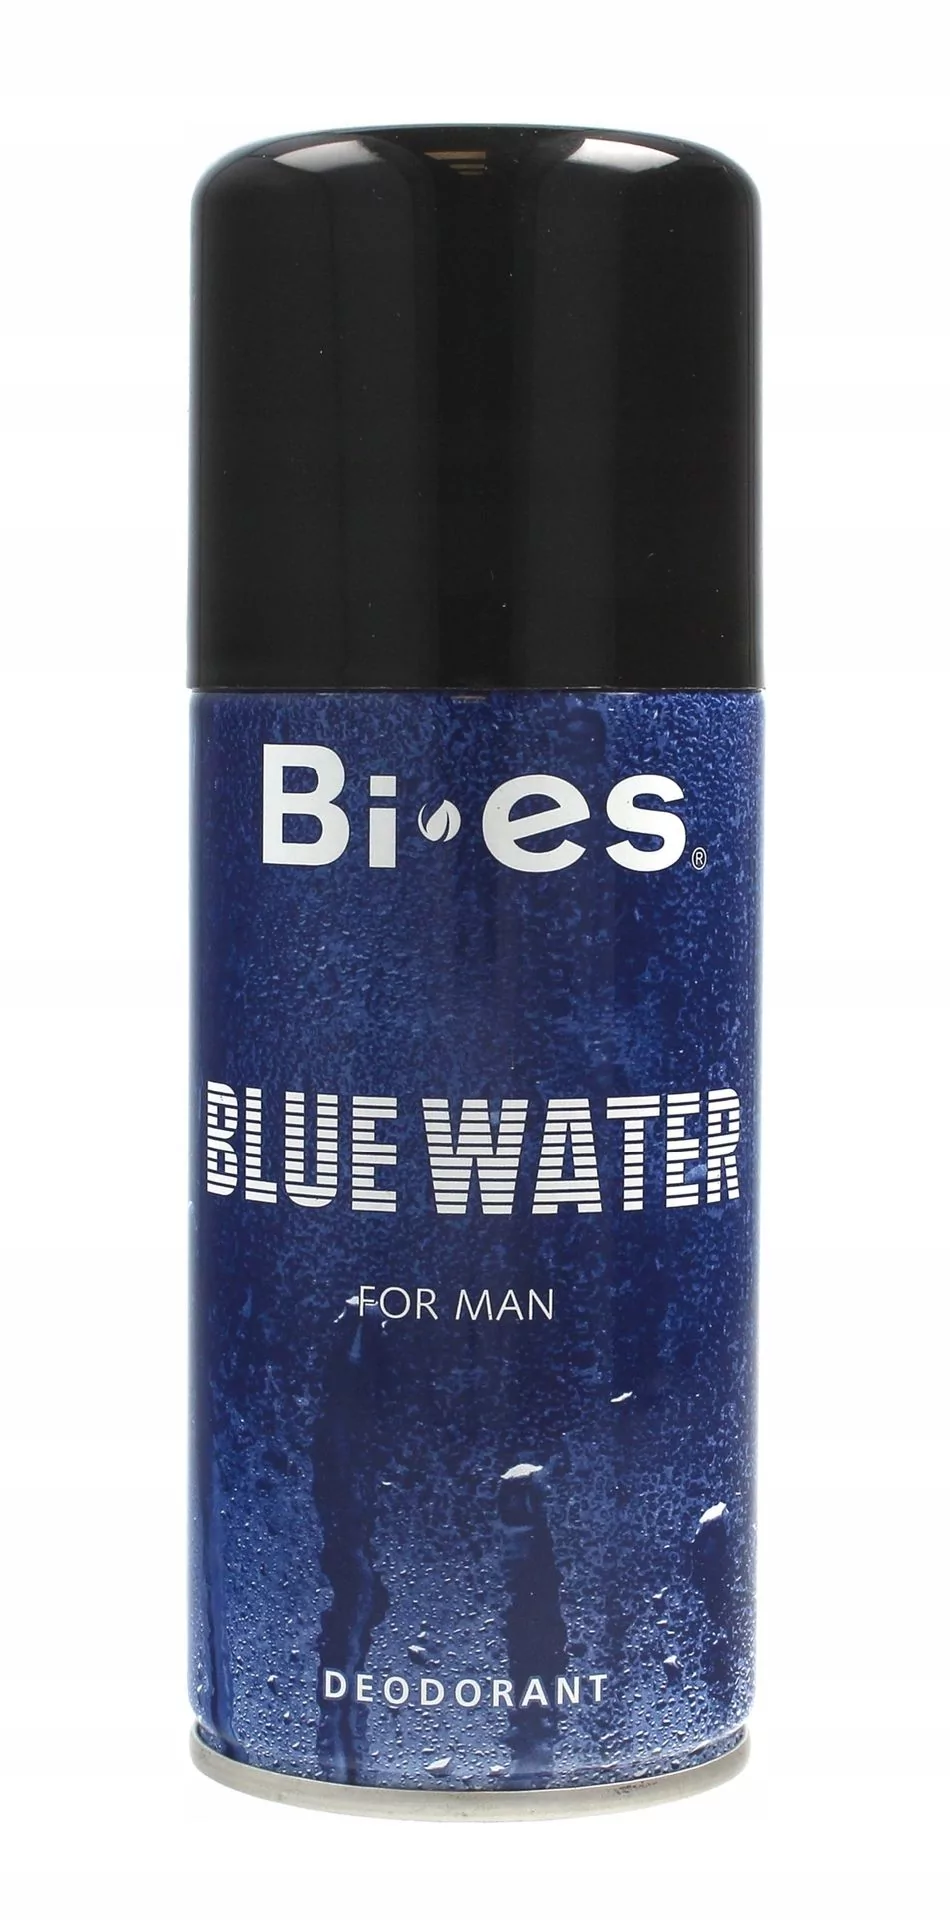 Bi-es dezodorant męski Blue Water 150ml